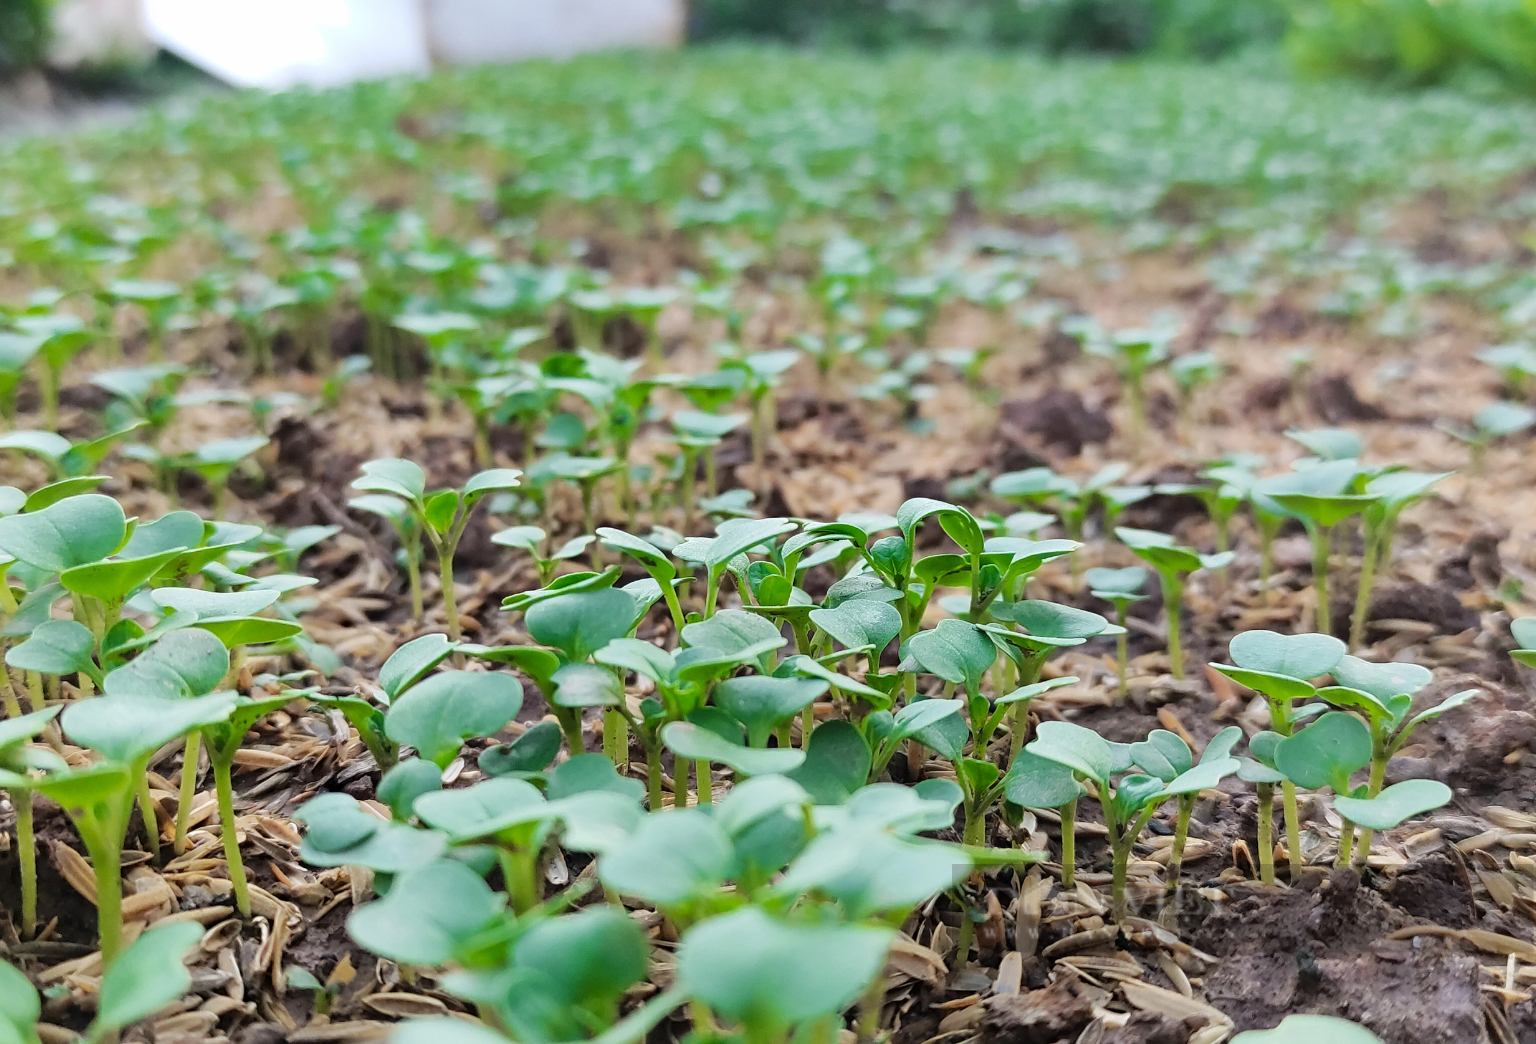 Sau phốt rau sạch rởm, dân chung cư ở Hà Nội phạt cỏ dại, khai hoang cuốc đất trồng rau - Ảnh 6.